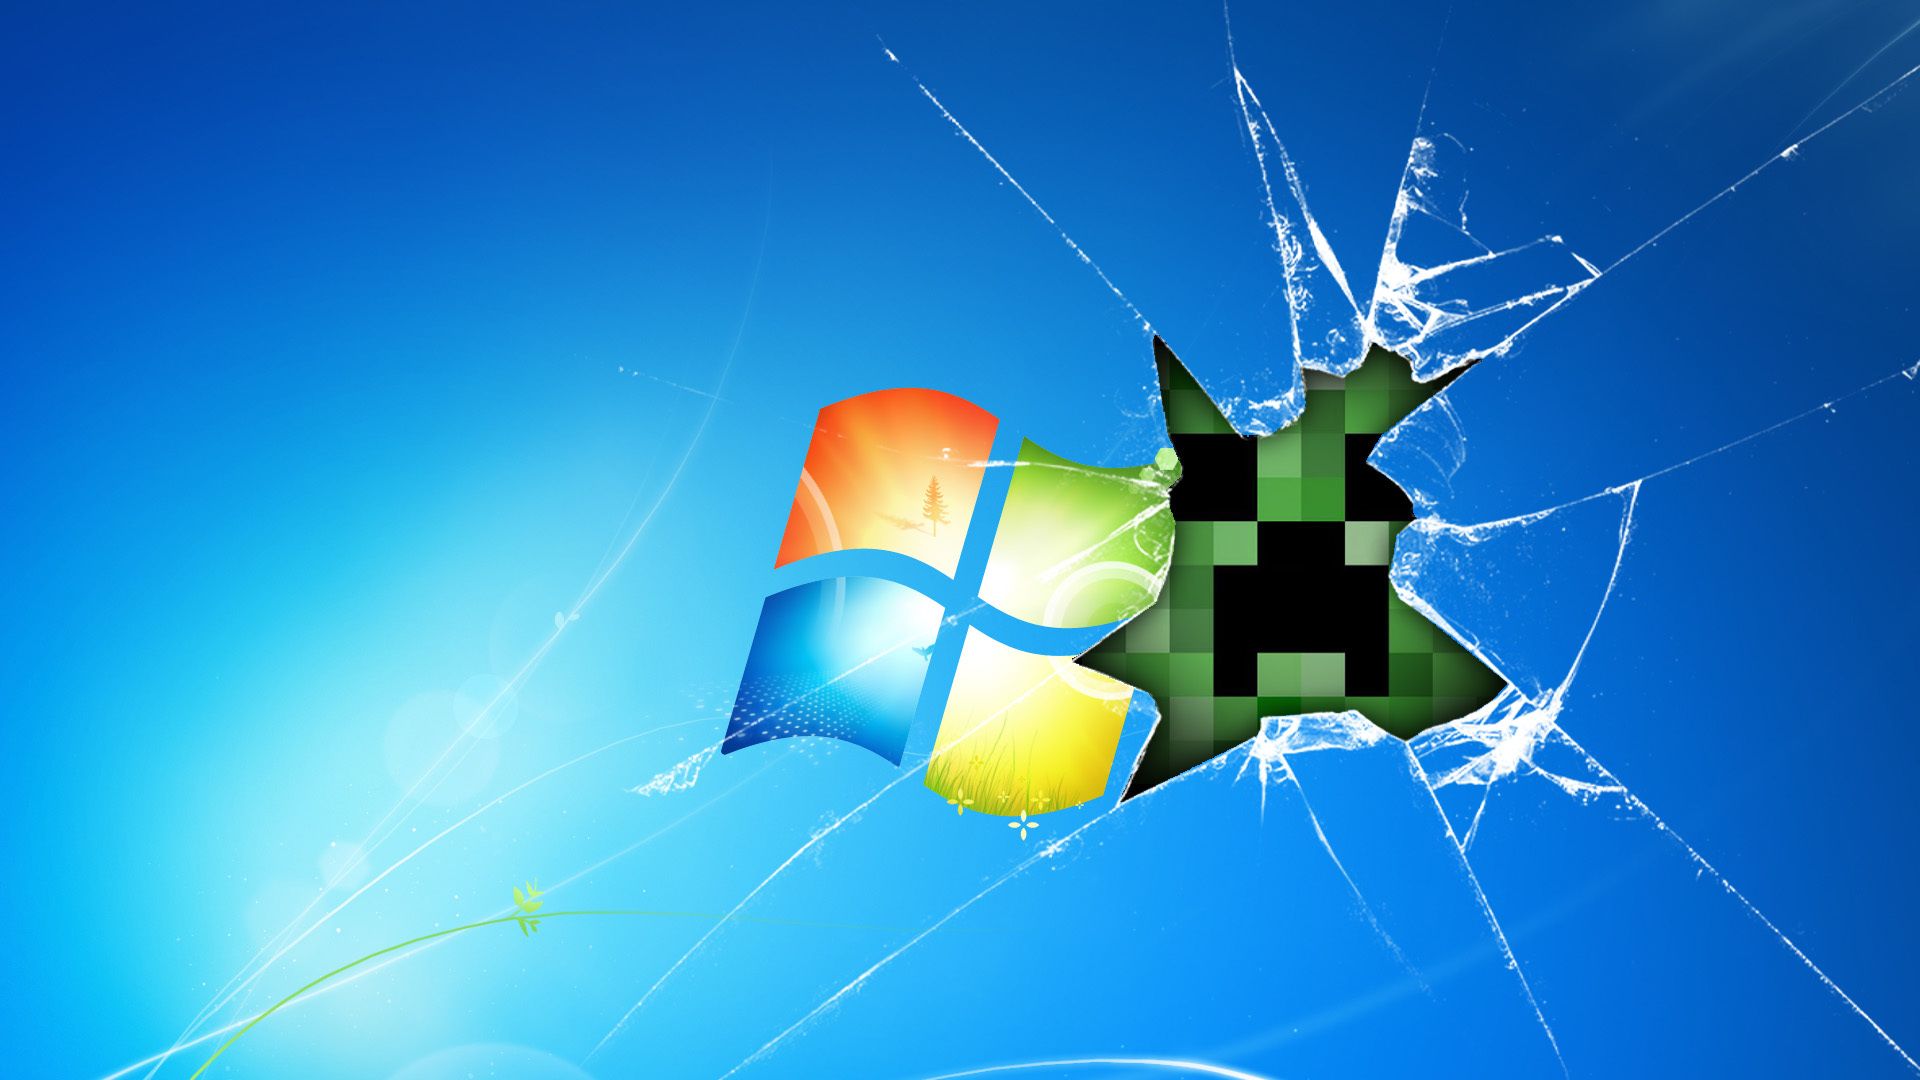 Windows Minecraft Game Wallpaper4u Org